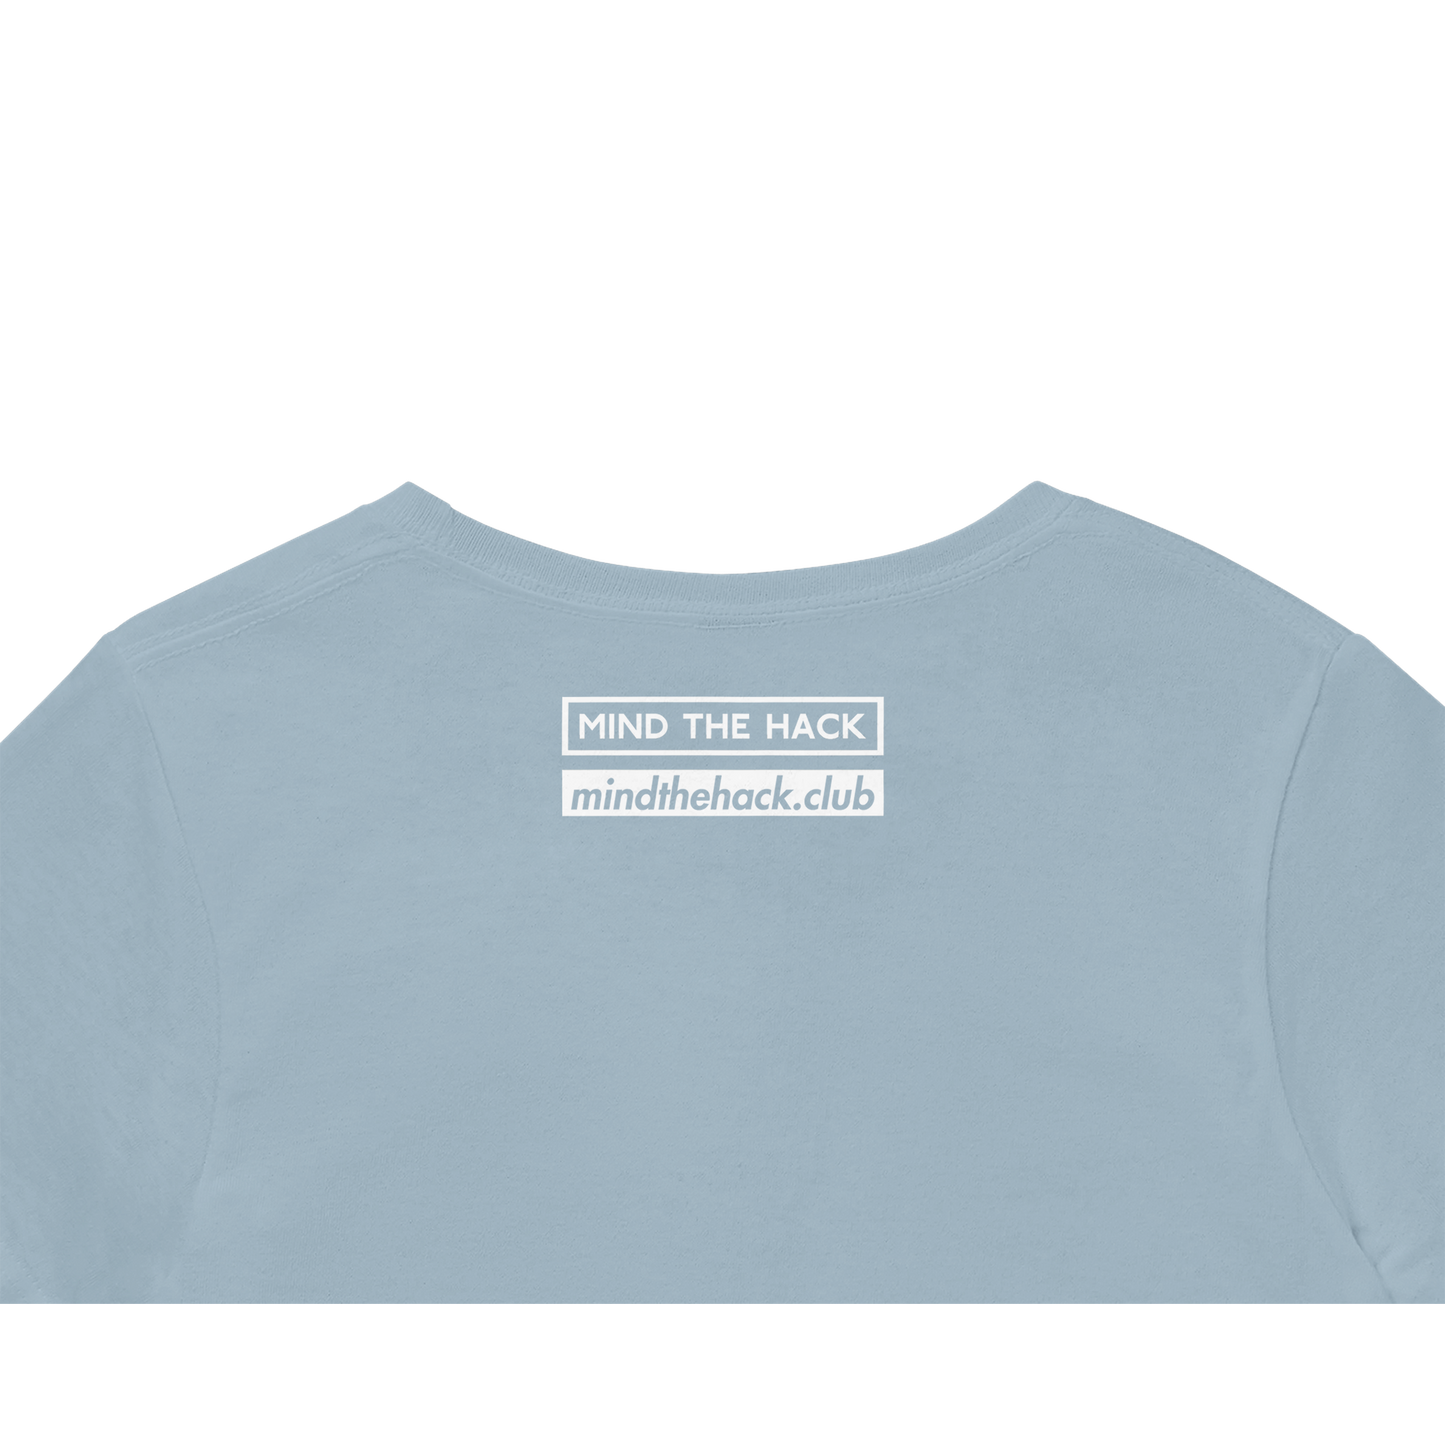 Minimale Sammlung - Pixelherzen Unisex T-Shirt